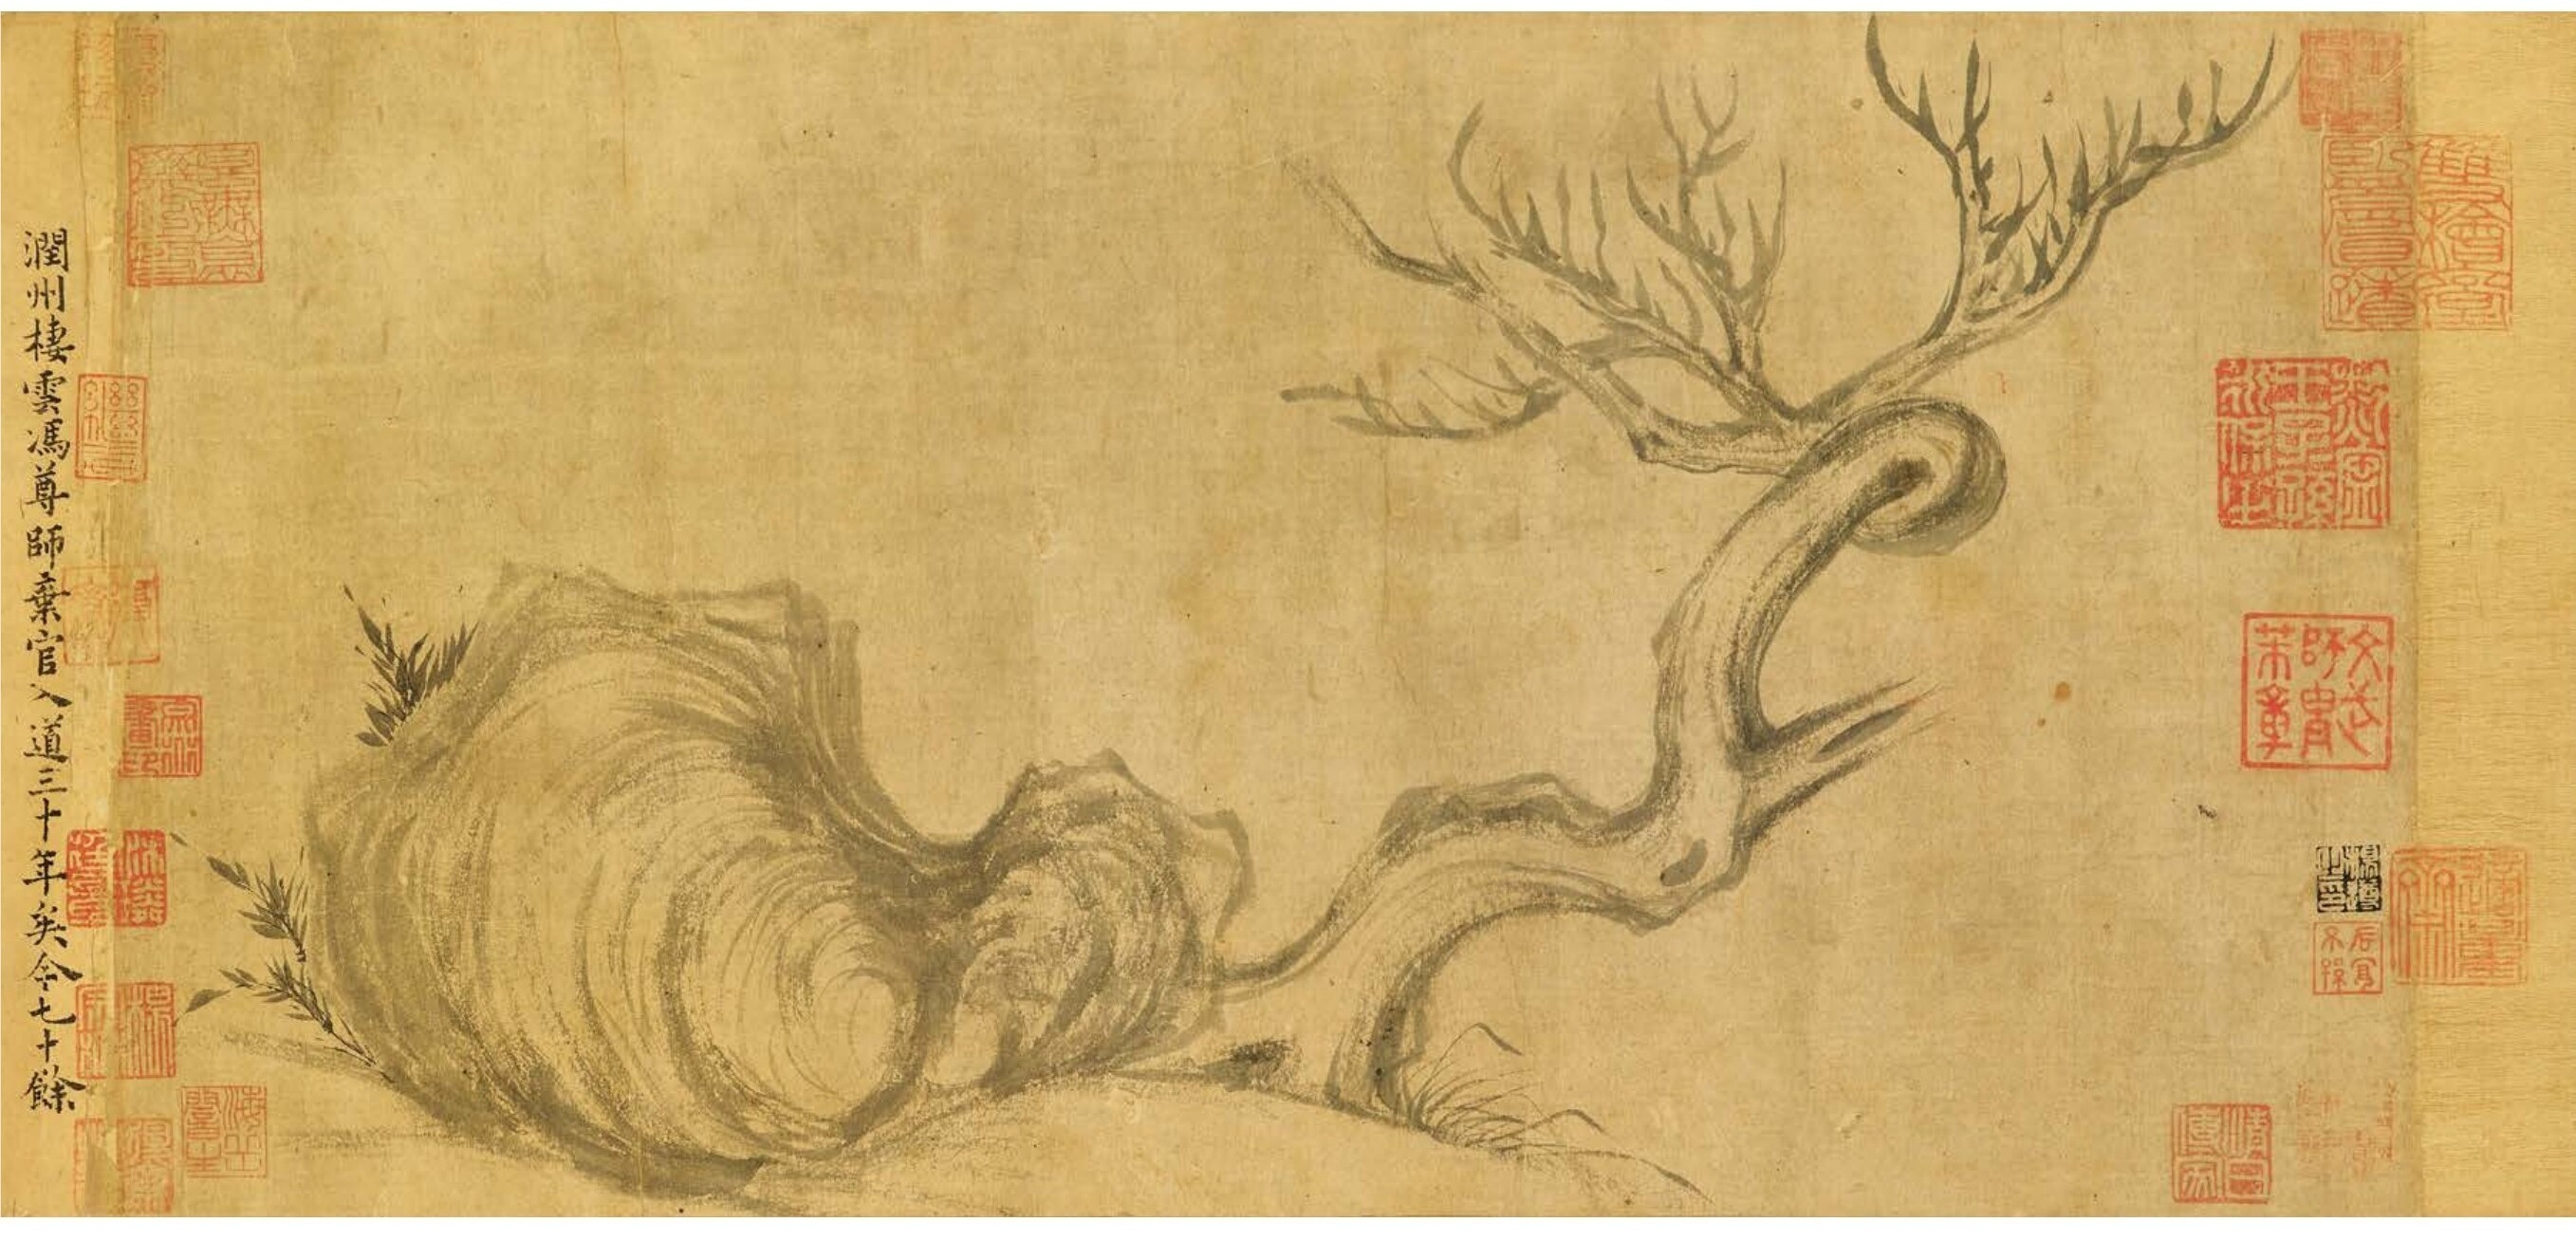 Su Shi (1037-1101) Wood and rock (木石图)